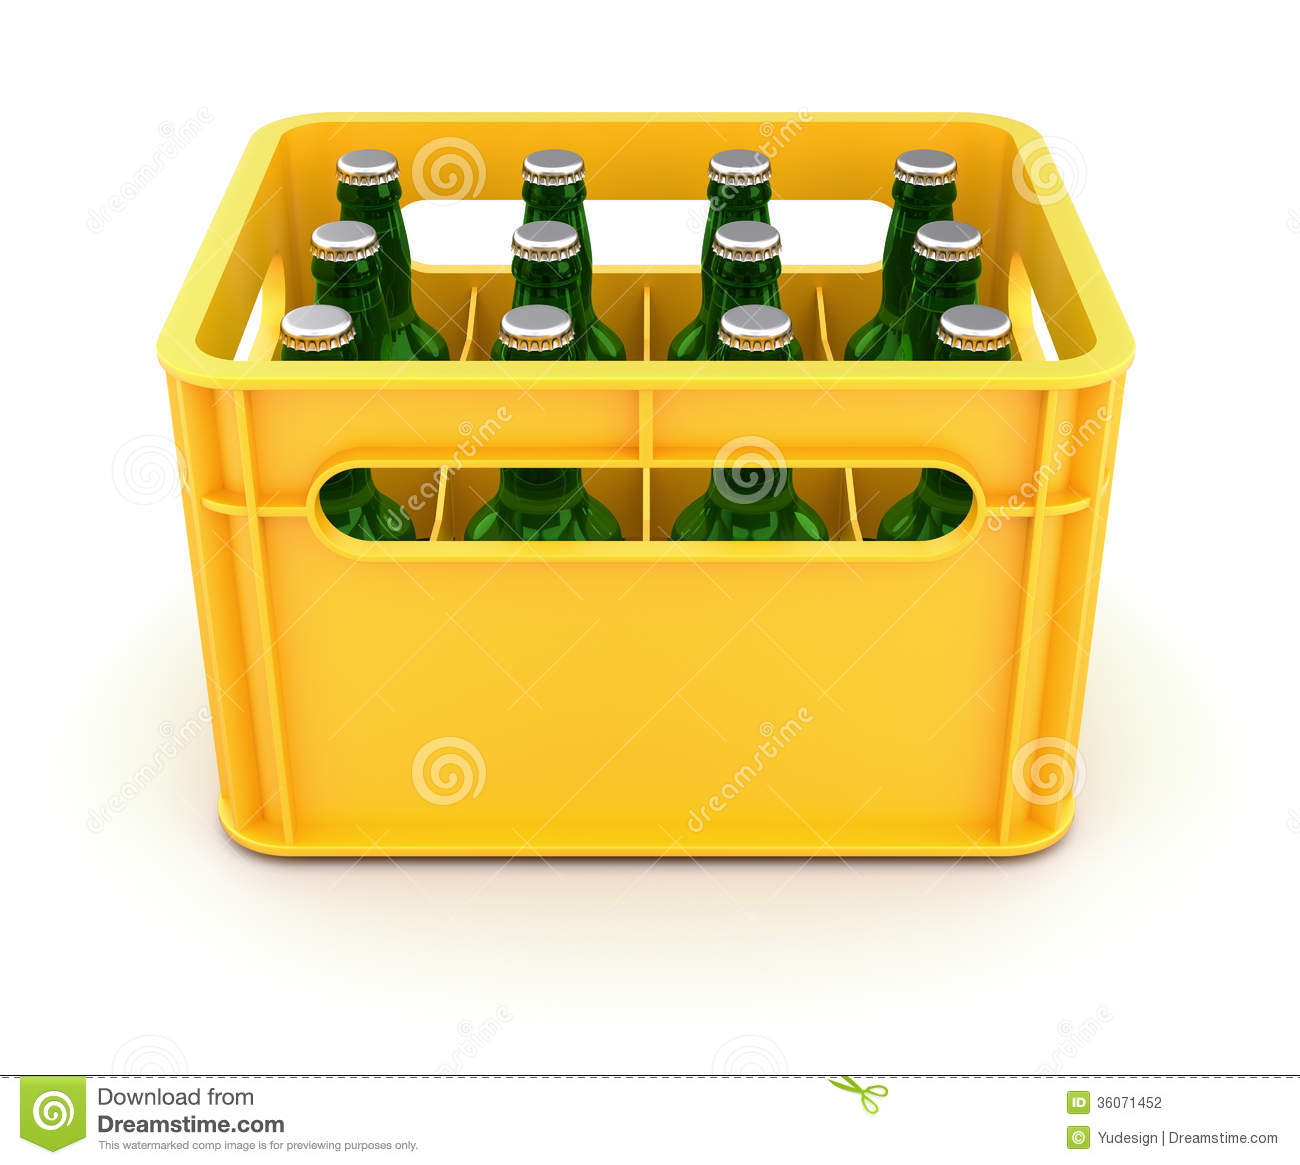 drink-crate-beer-bottles-d-illustration-36071452.jpg